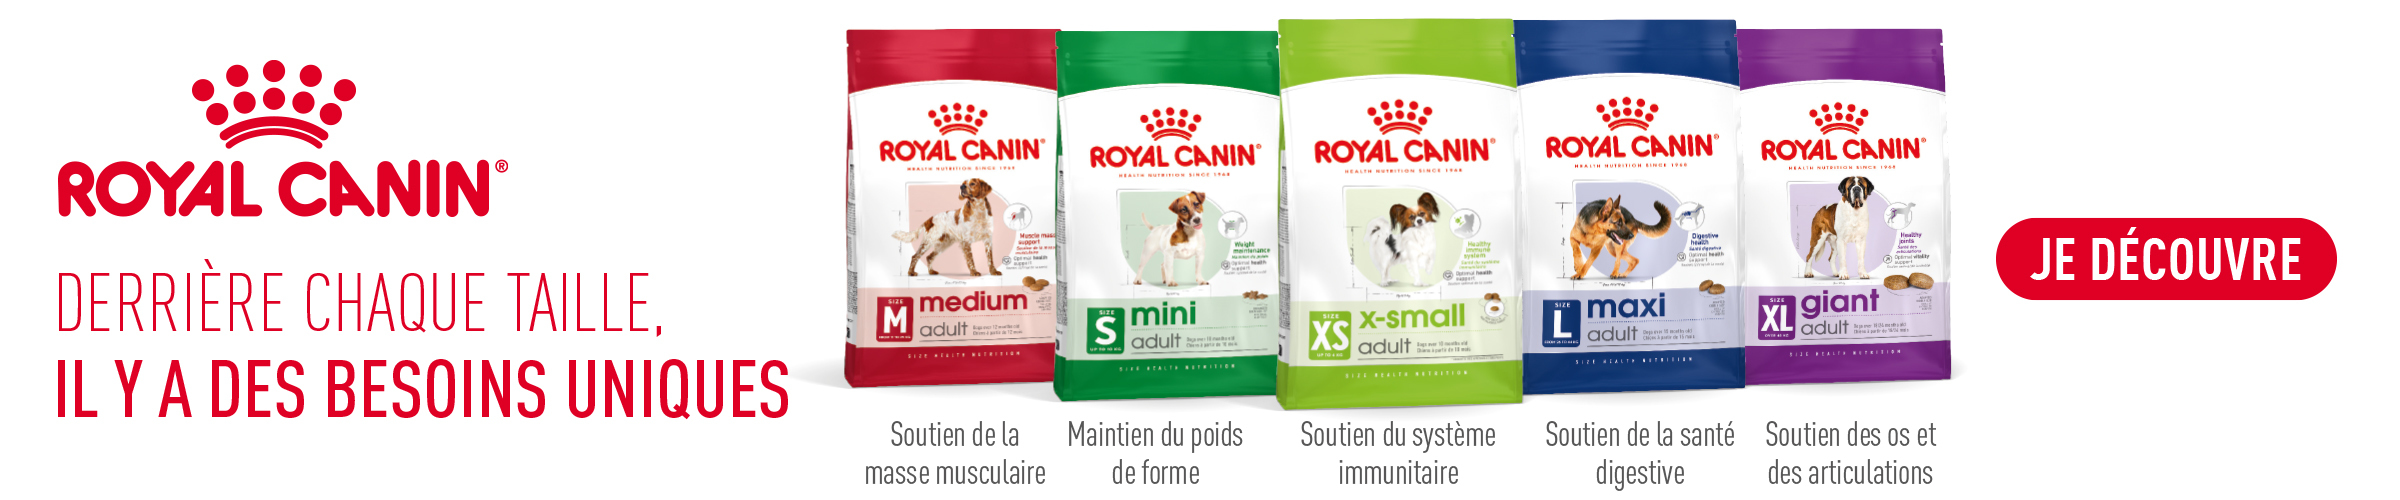 Royal Canin nouveaux packagings